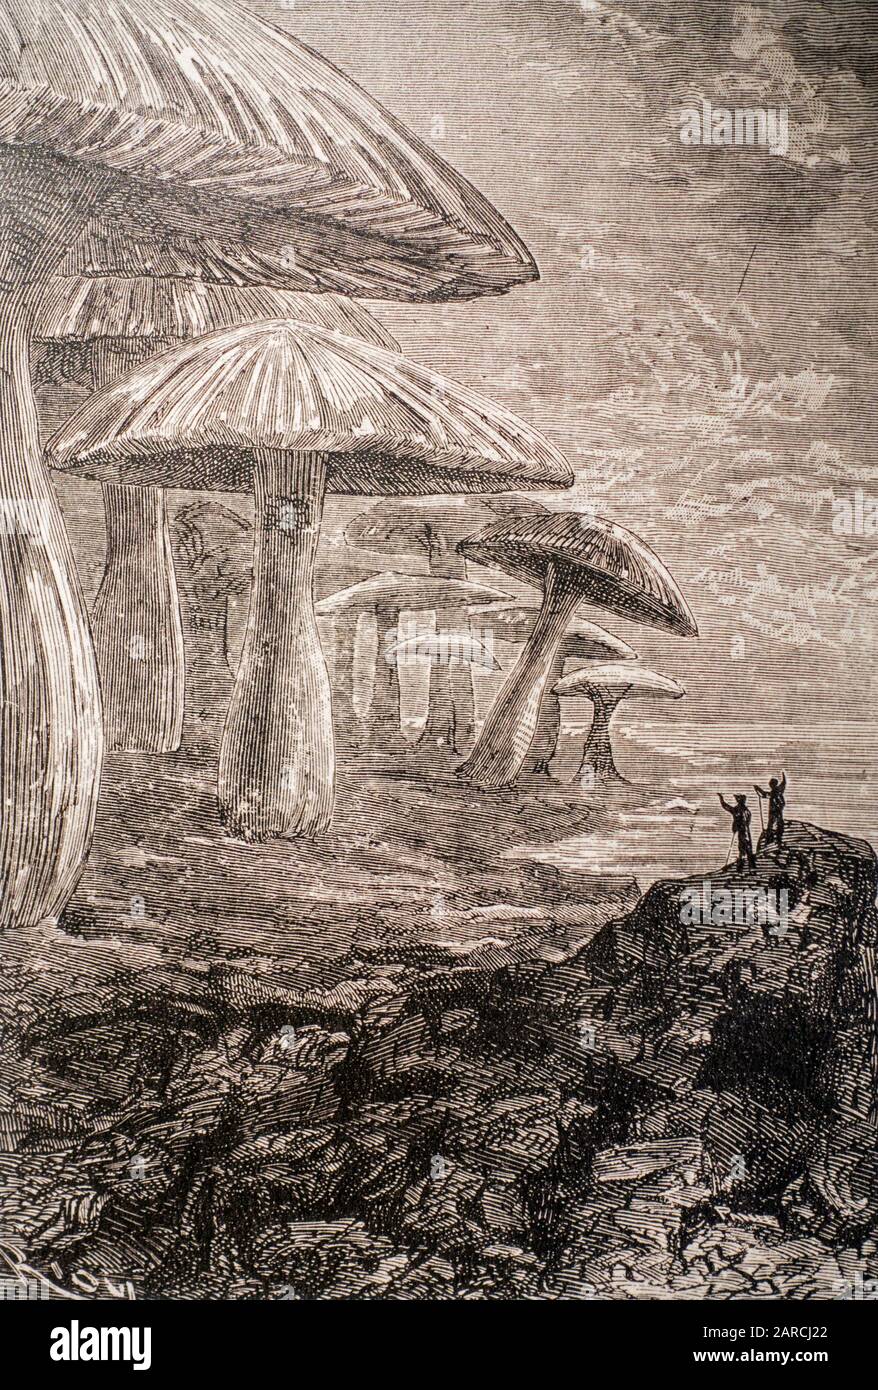 1864 livre illustration montrant des champignons géants du roman de science-fiction Voyage au Centre de la Terre par l'écrivain / romancier français Jules Verne Banque D'Images